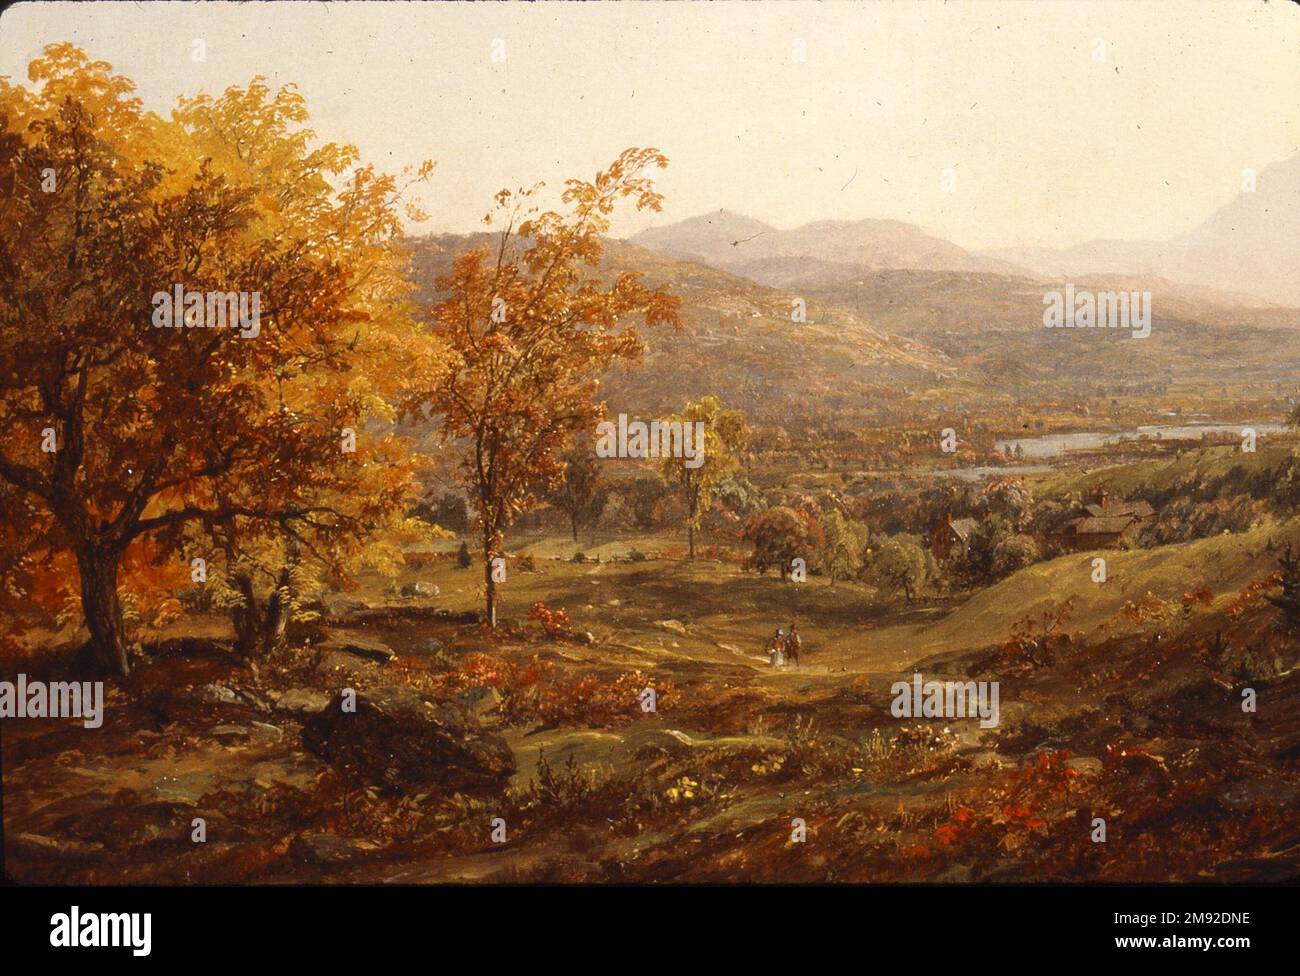 Automne au mont Chocorua Jasper Francis Cropsey (américain, 1823-1900). Automne au Mont Chocorua, 1869. Huile sur toile, 23 13/16 x 44 1/4 in. (60,5 x 112,4 cm). Cette scène automnale brillamment rendue offre une vue panoramique sur les montagnes blanches du New Hampshire, où Jasper Francis Cropsey a esquissé et peint en 1860s et début 1870s, avec le sommet du mont Chocorua au loin. Au premier plan, les éléments topographiques observés de près, y compris les arbres sabrés et le feuillage d'automne, sont rendus avec des détails infimes, tandis que le ciel étendu est illuminé par une lueur jaune percutant. Le Banque D'Images